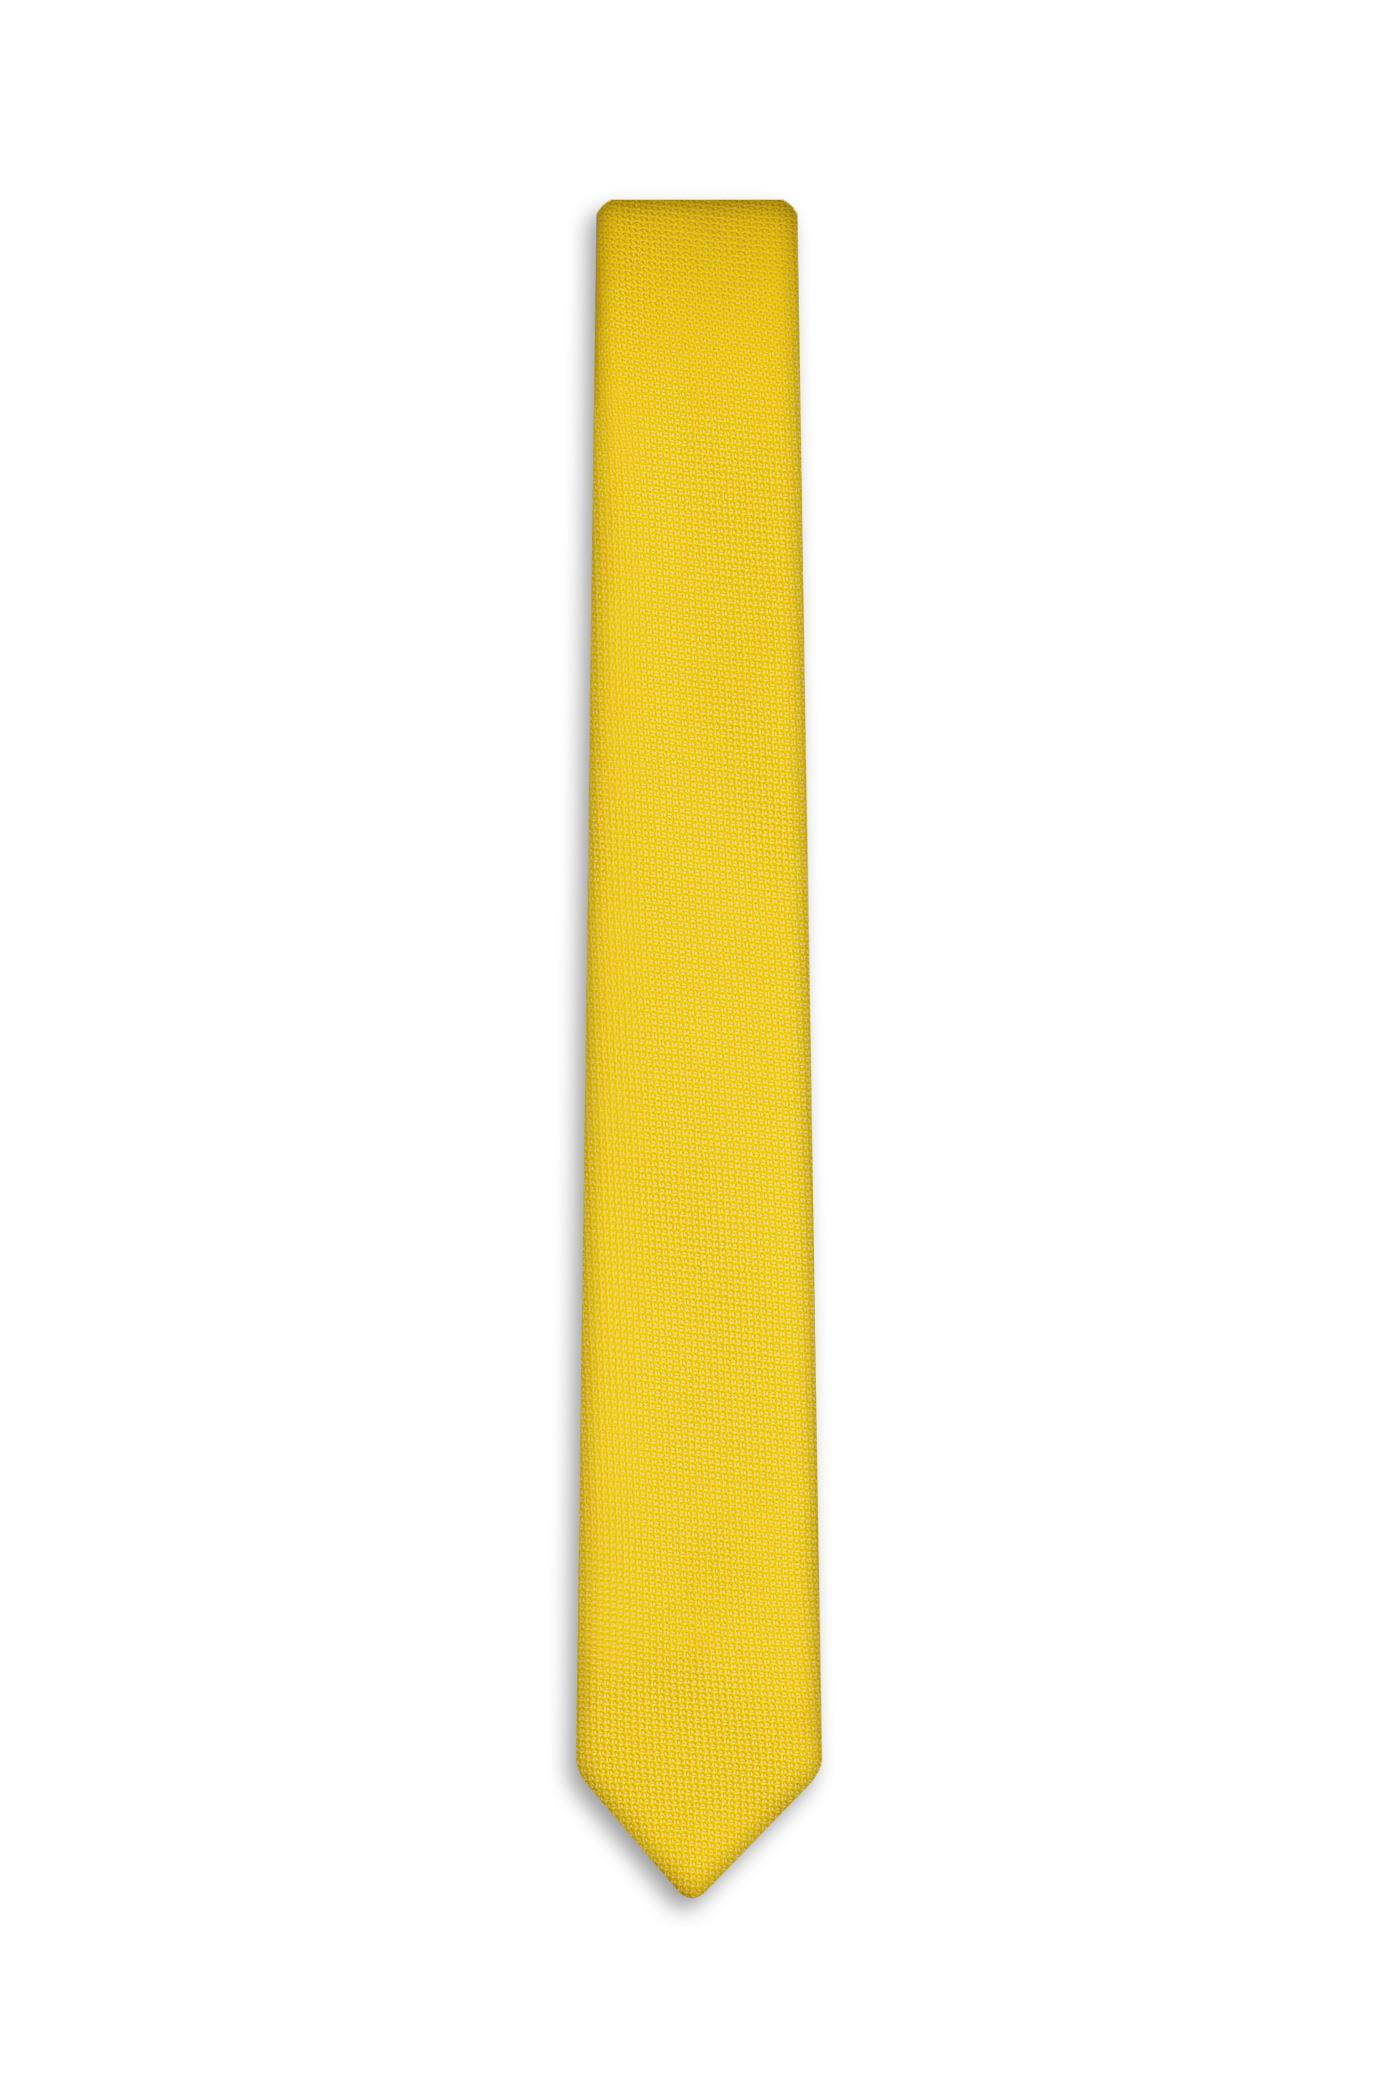 کروات ساده (200008/5) زرد